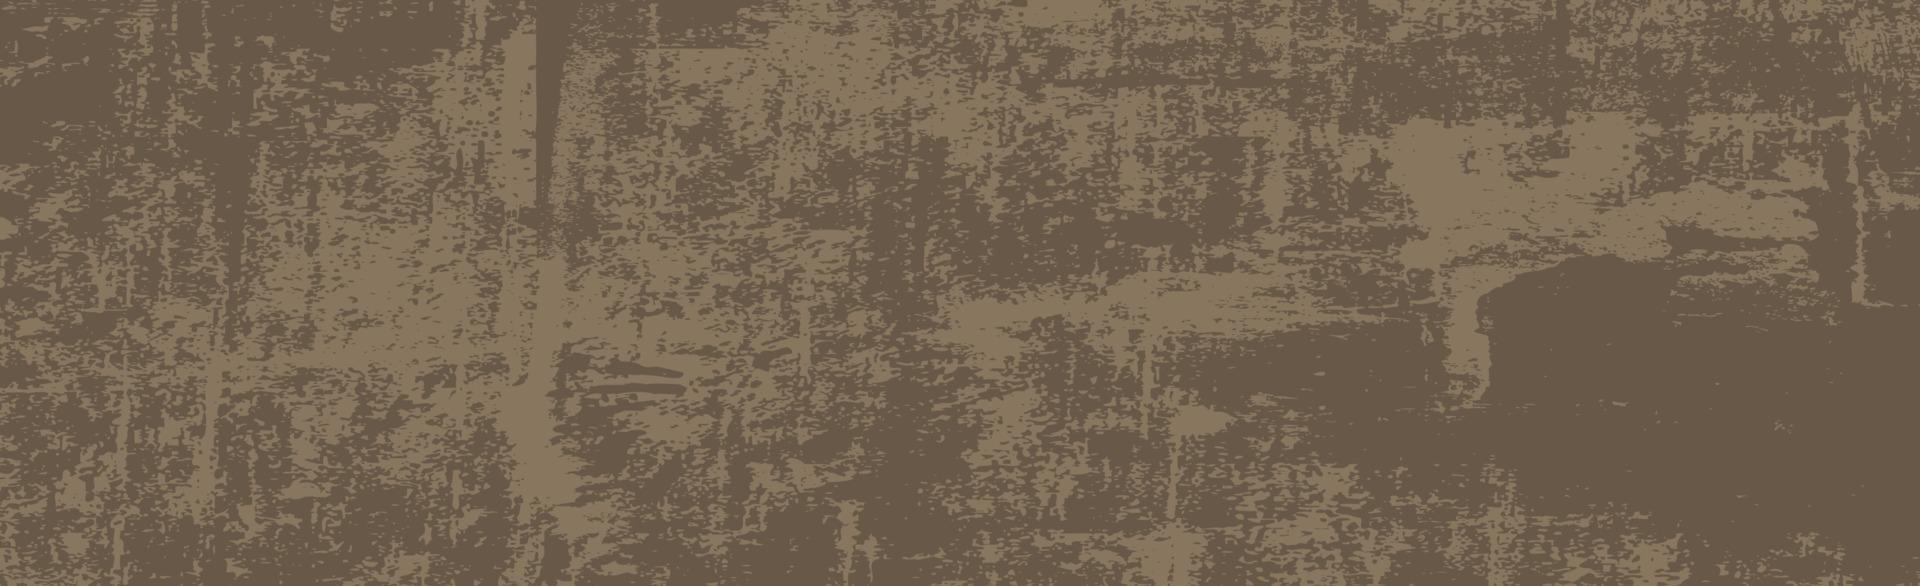 sfondo realistico, vecchio muro marrone scuro - vettore